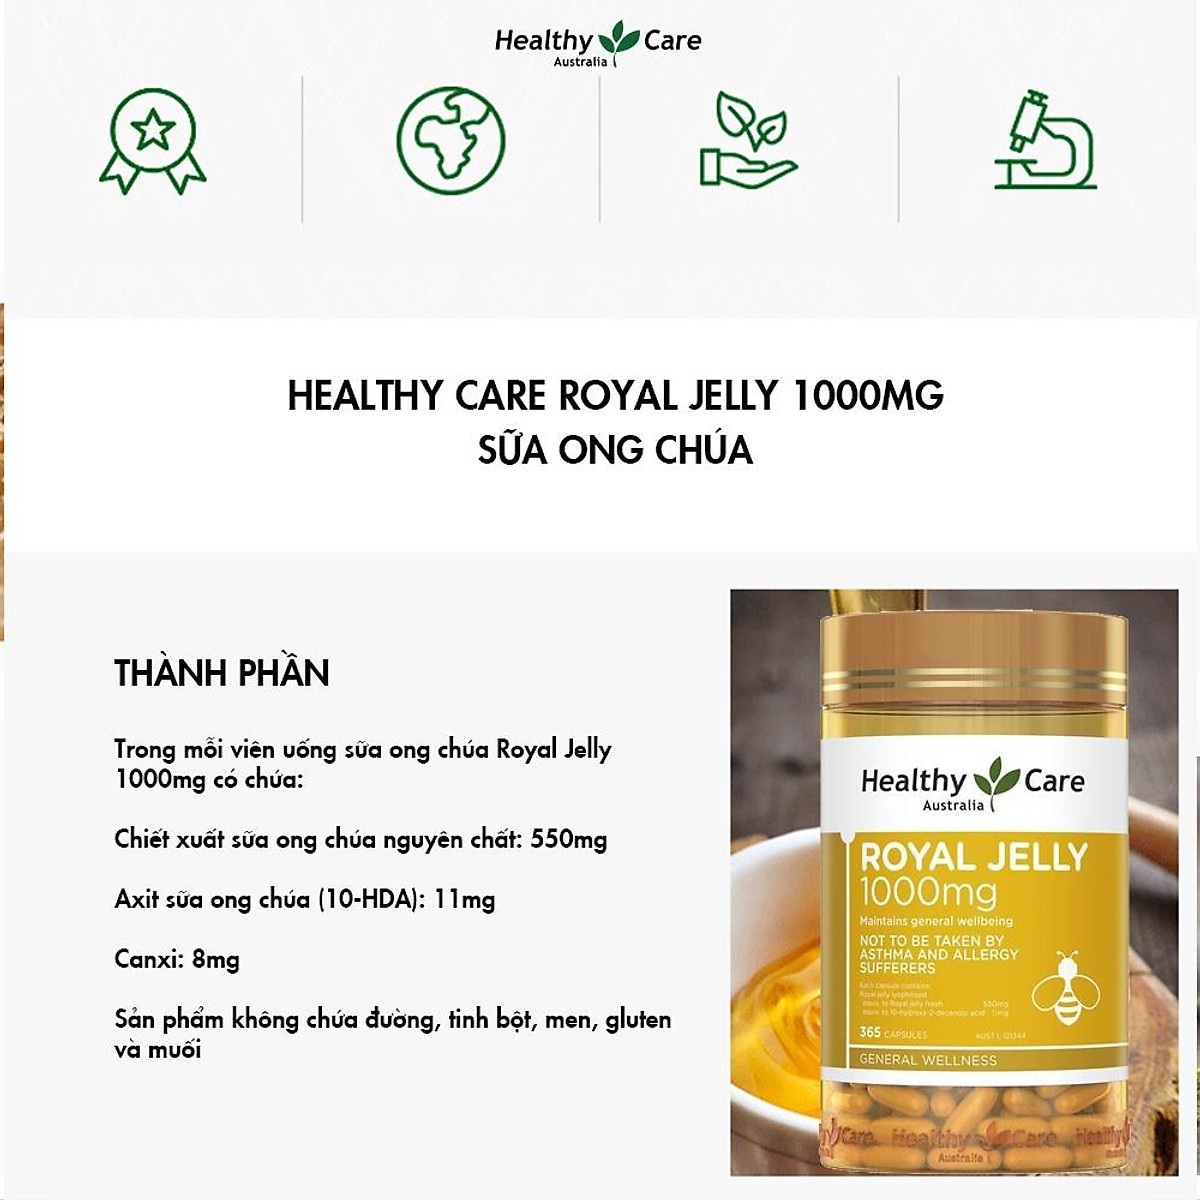 Sữa Ong chúa Healthy Care Royal Jelly Úc Hỗ trợ đẹp da, làm chậm quá trình lão hóa, giảm nám, tàn nhanh, tăng sức khỏe tổng thể - OZ Slim Store